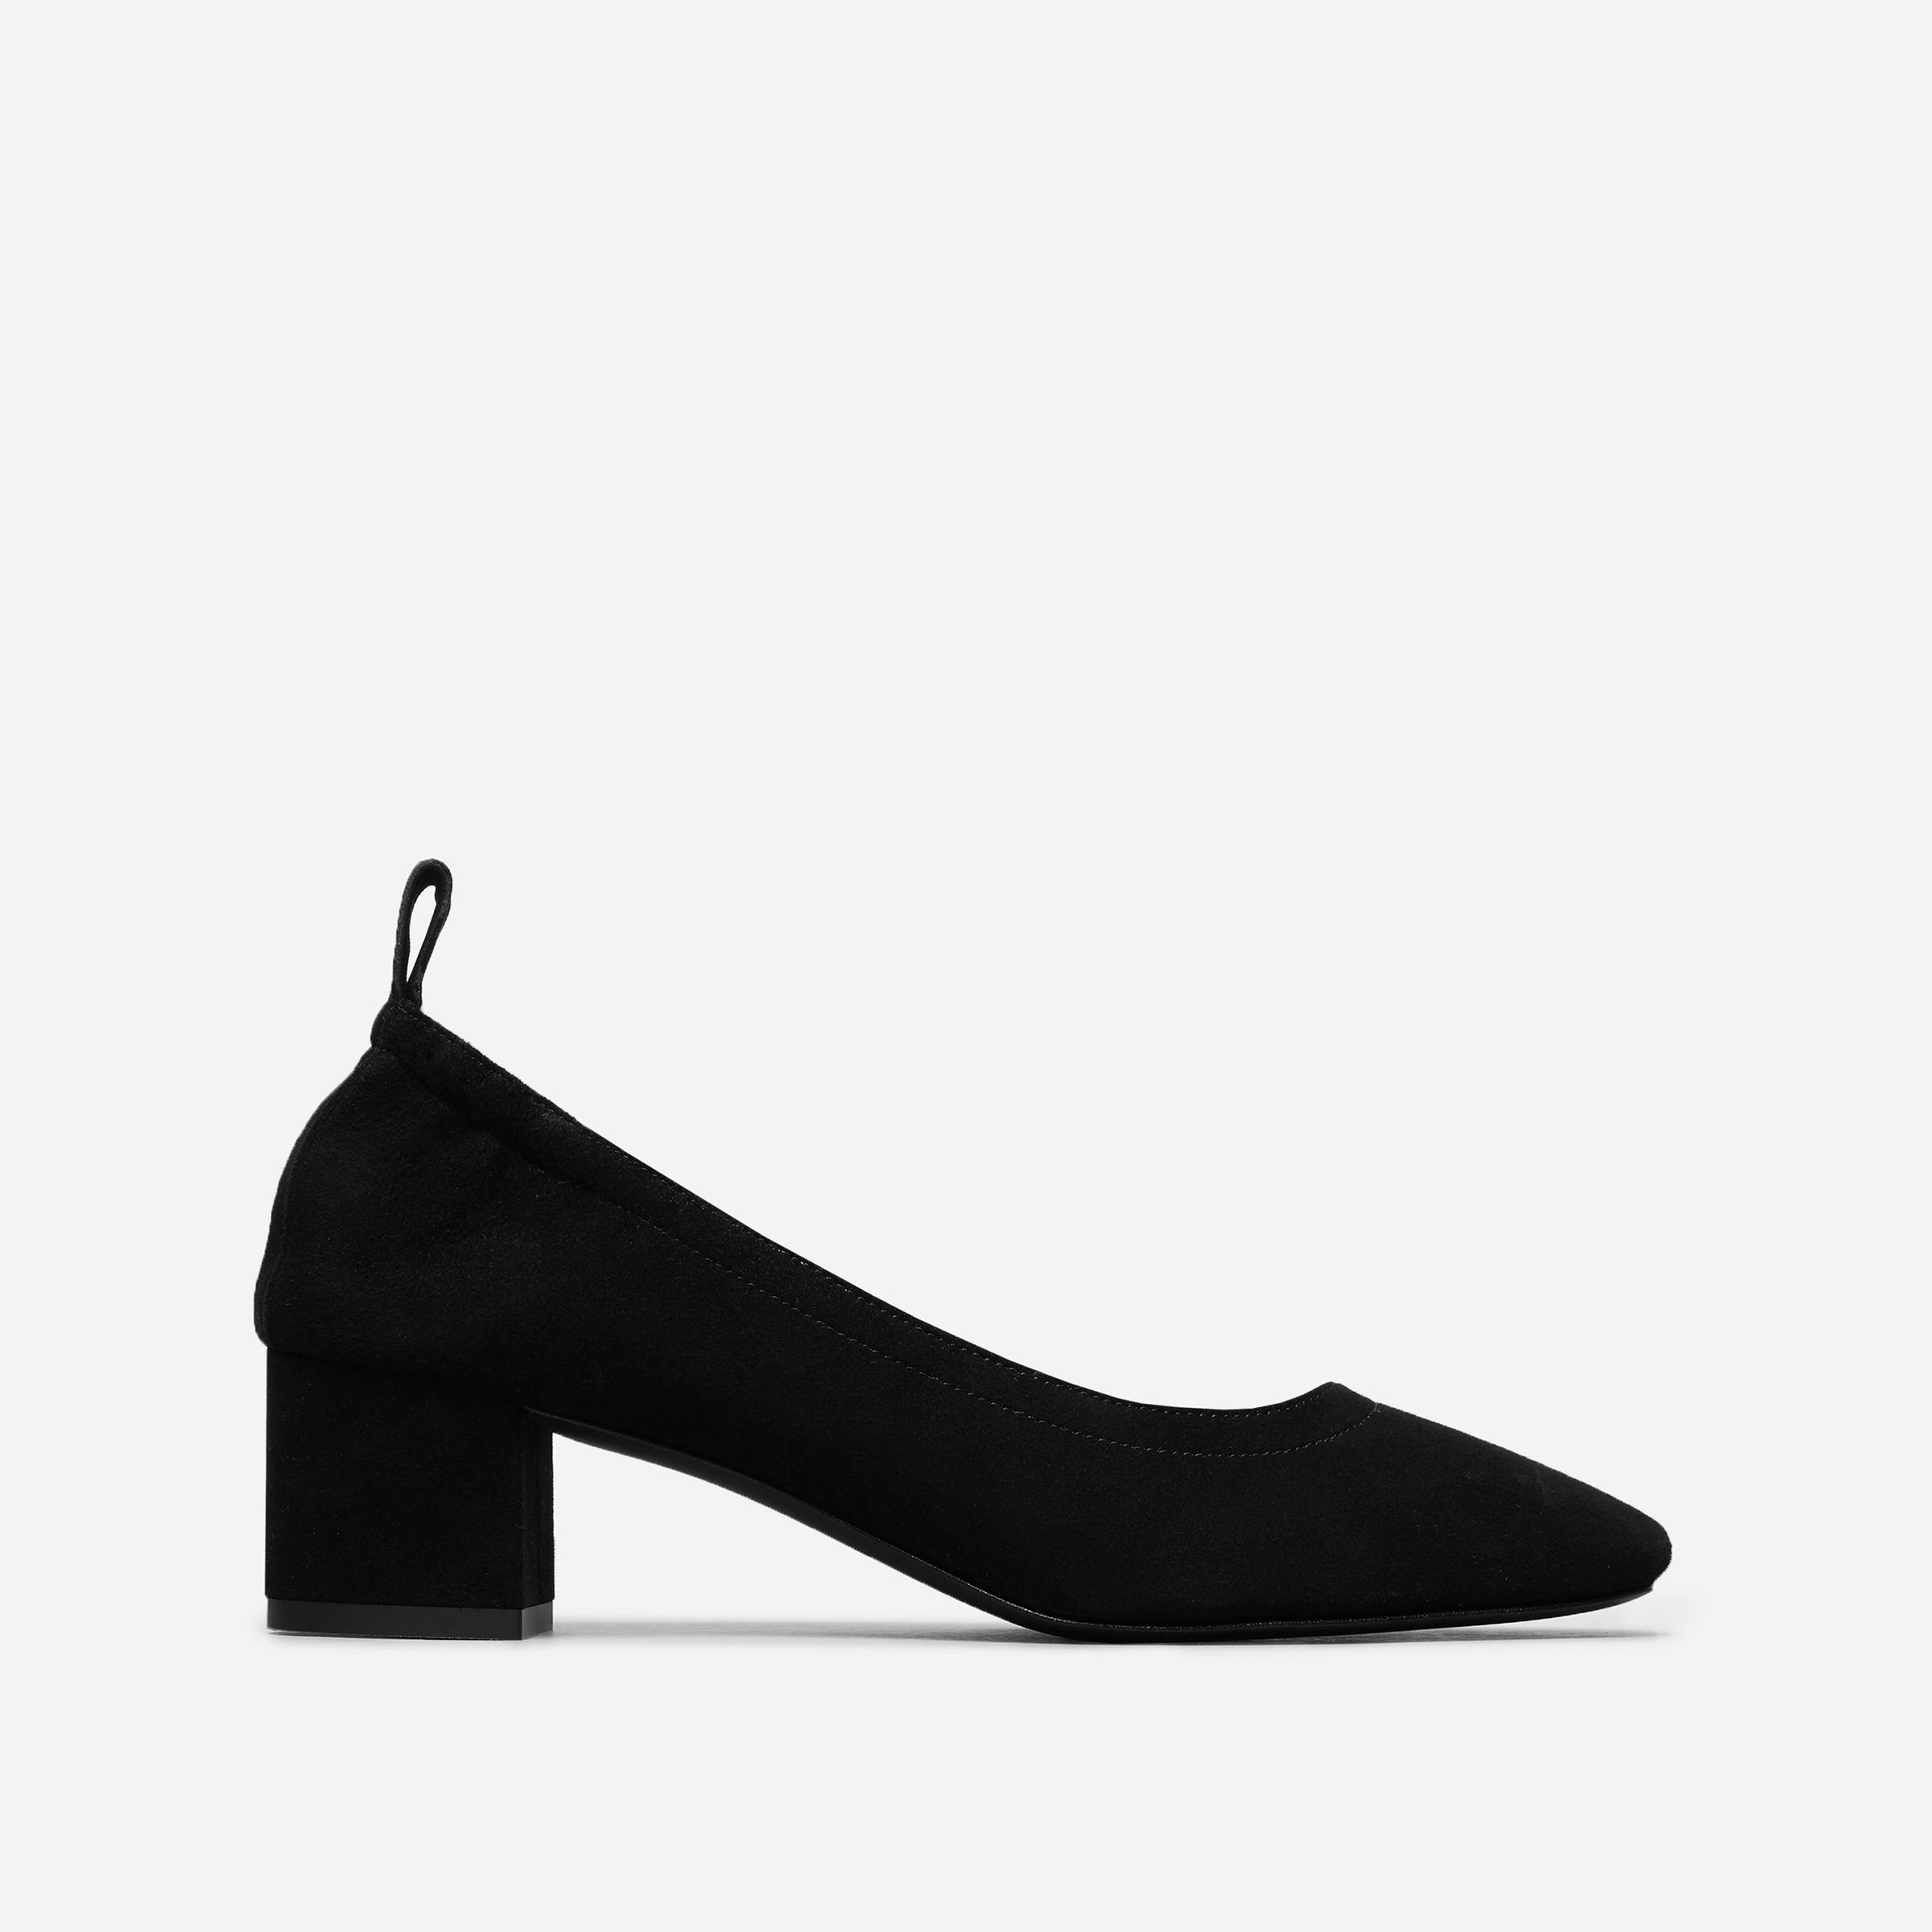 comfortable heels online